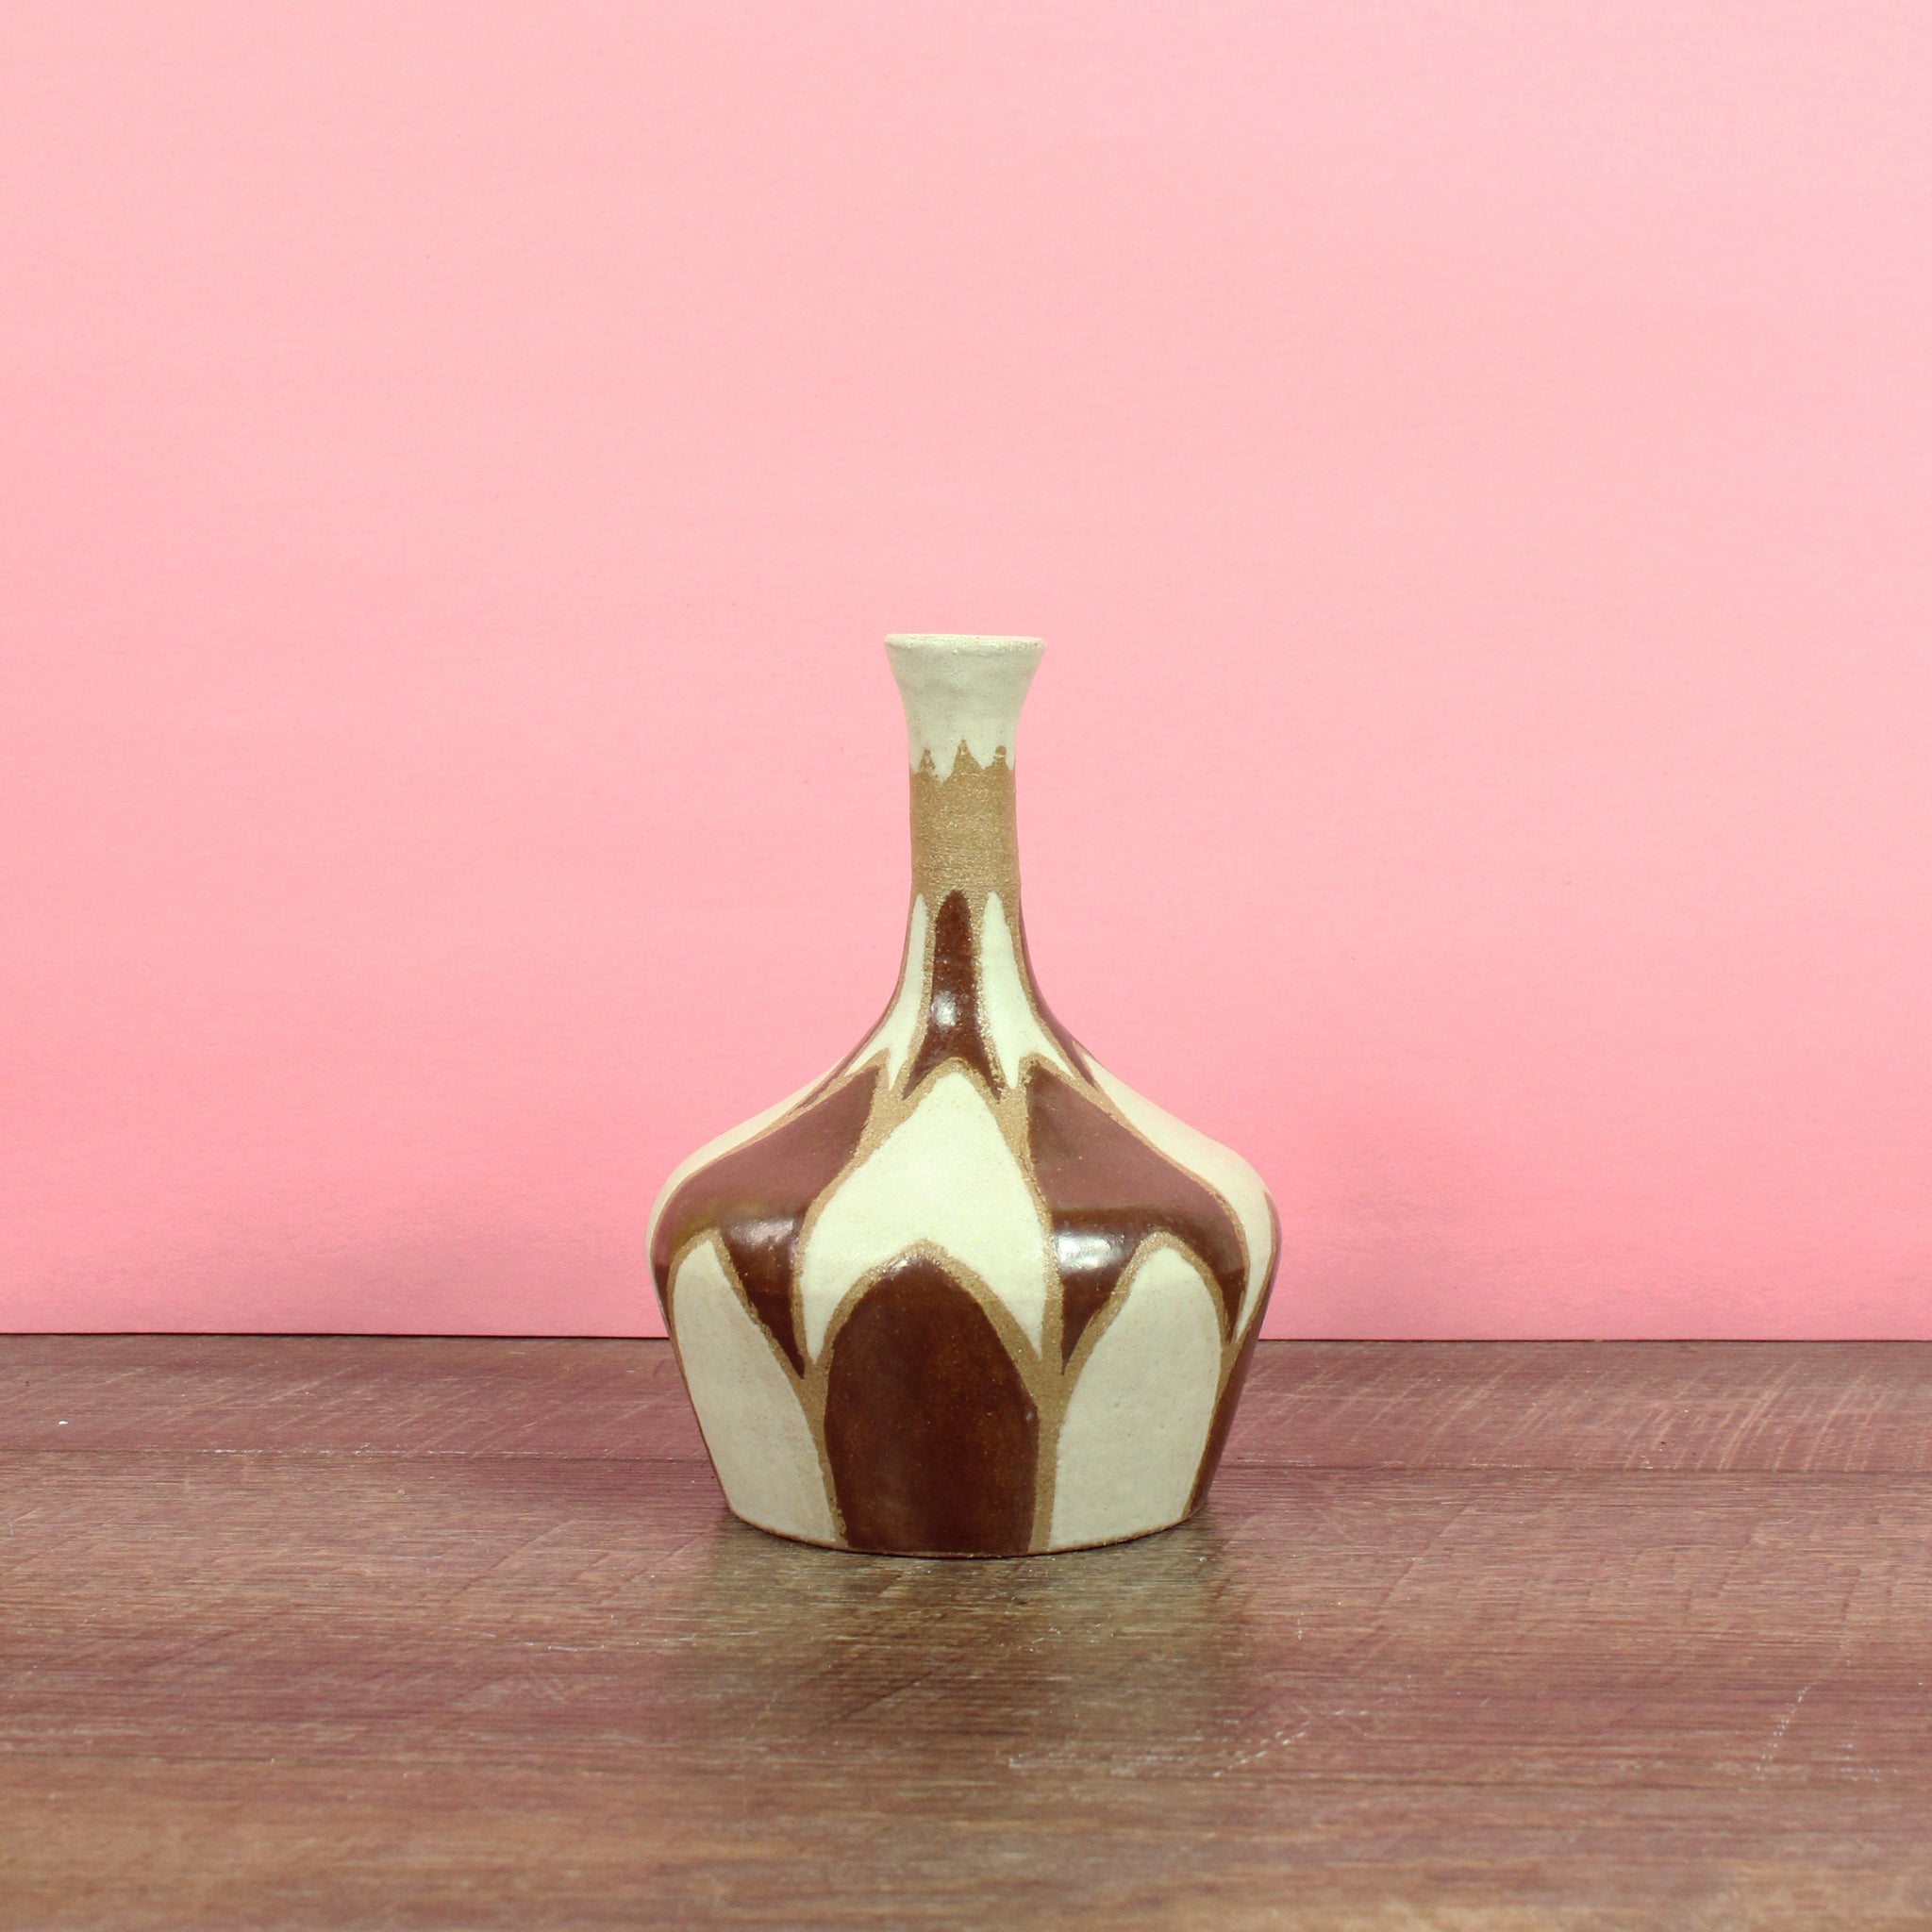 Glazed Stoneware Bud Vase with Overlapping Shapes